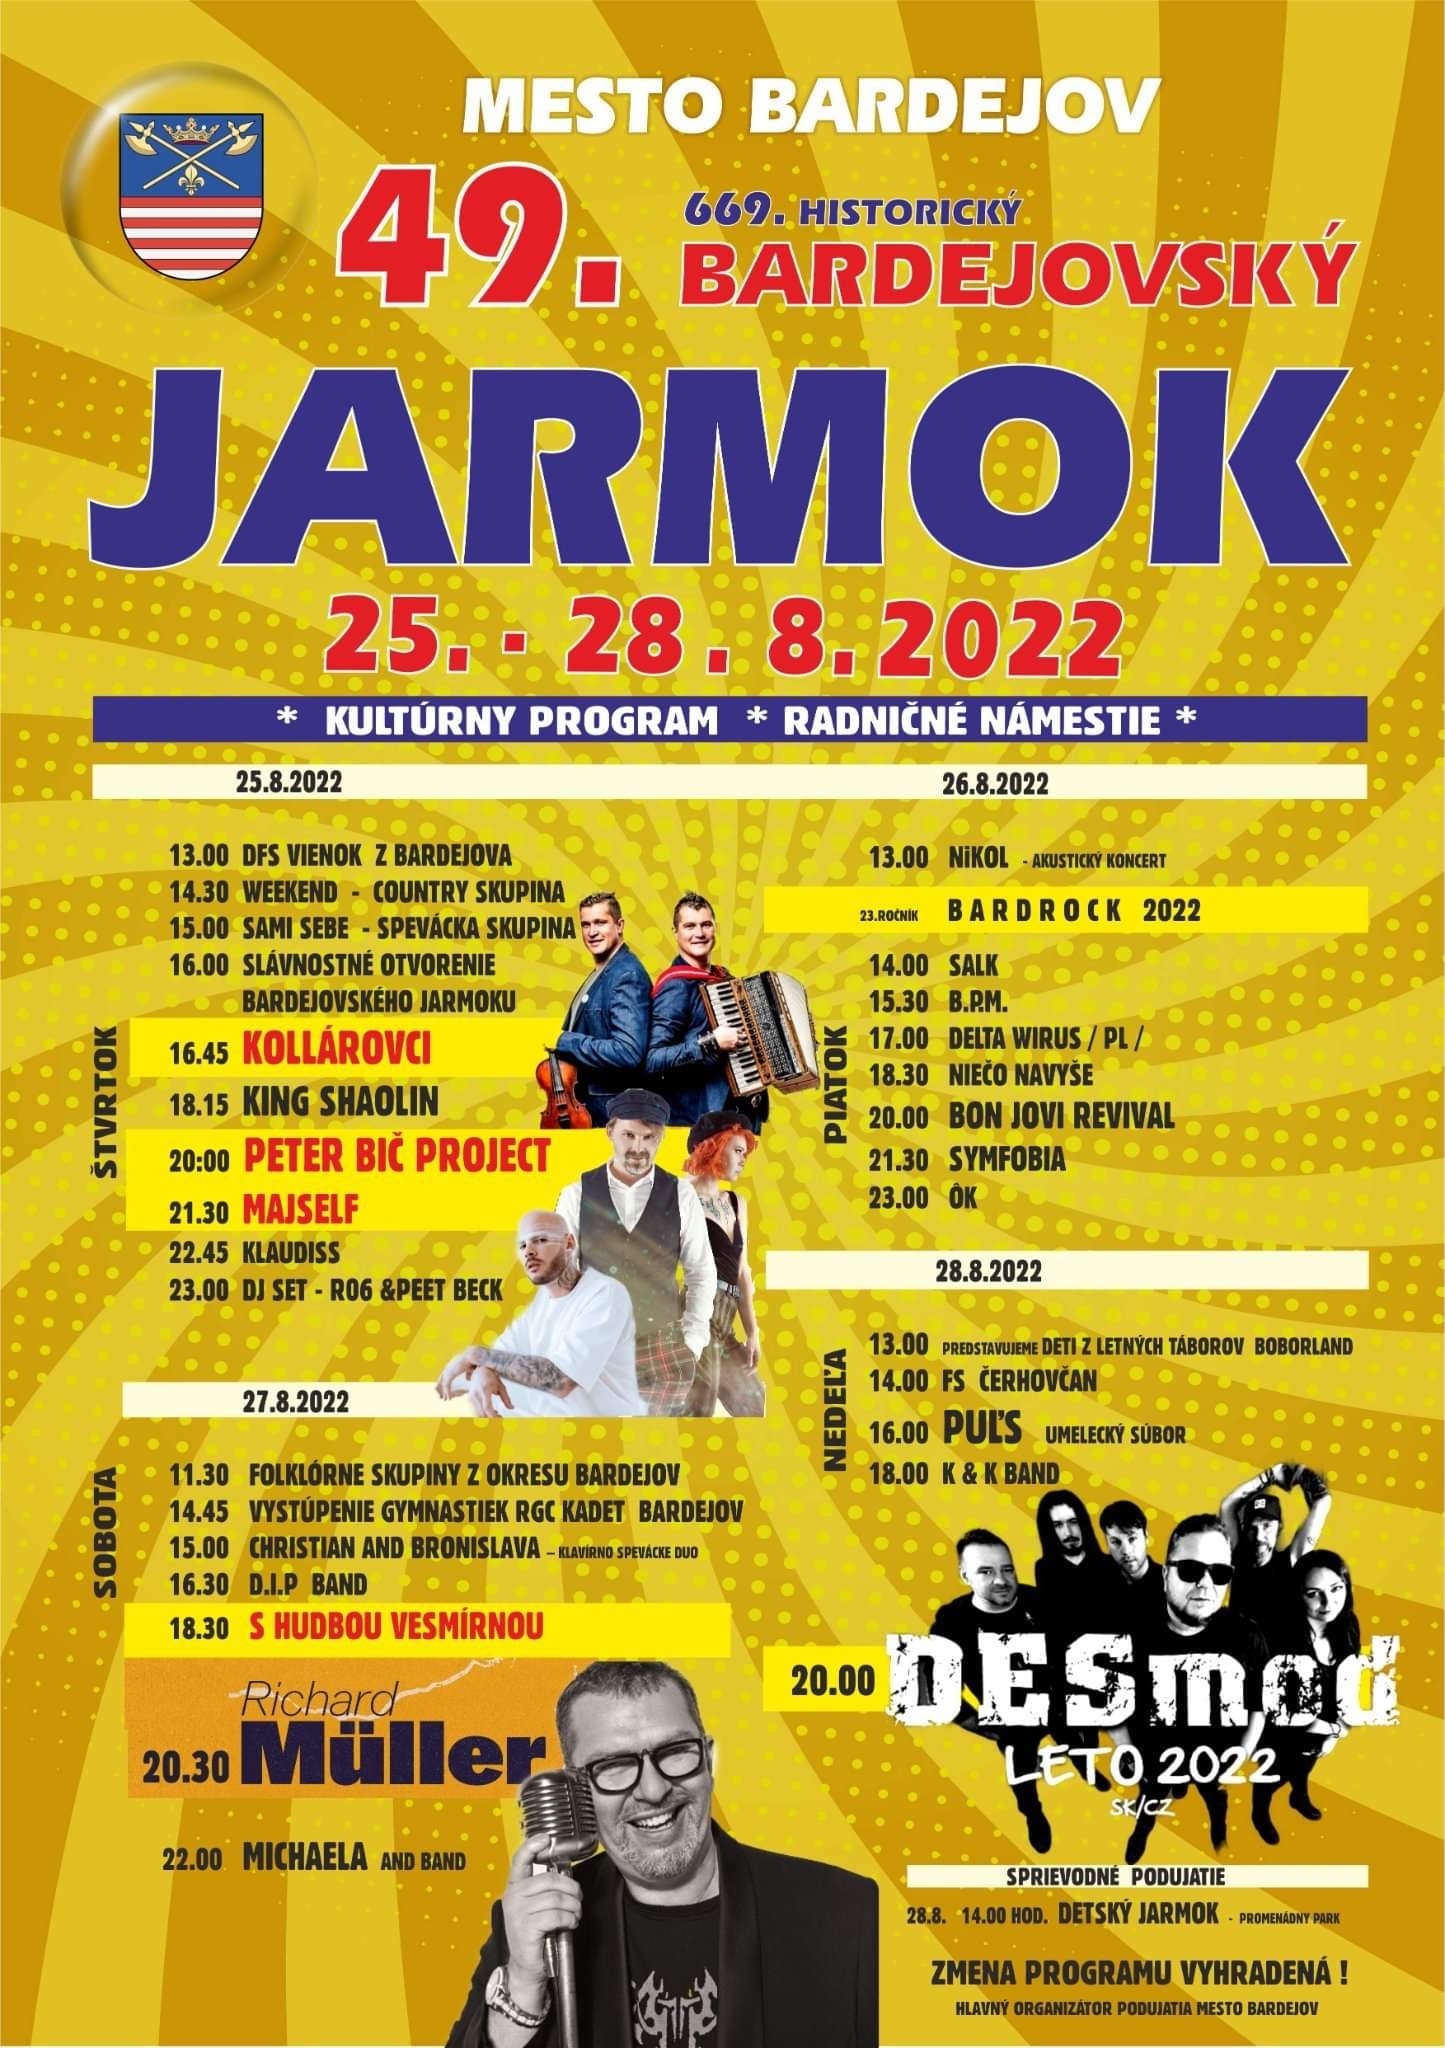 Plakat zapraszający na Jarmark w Bardejovie.